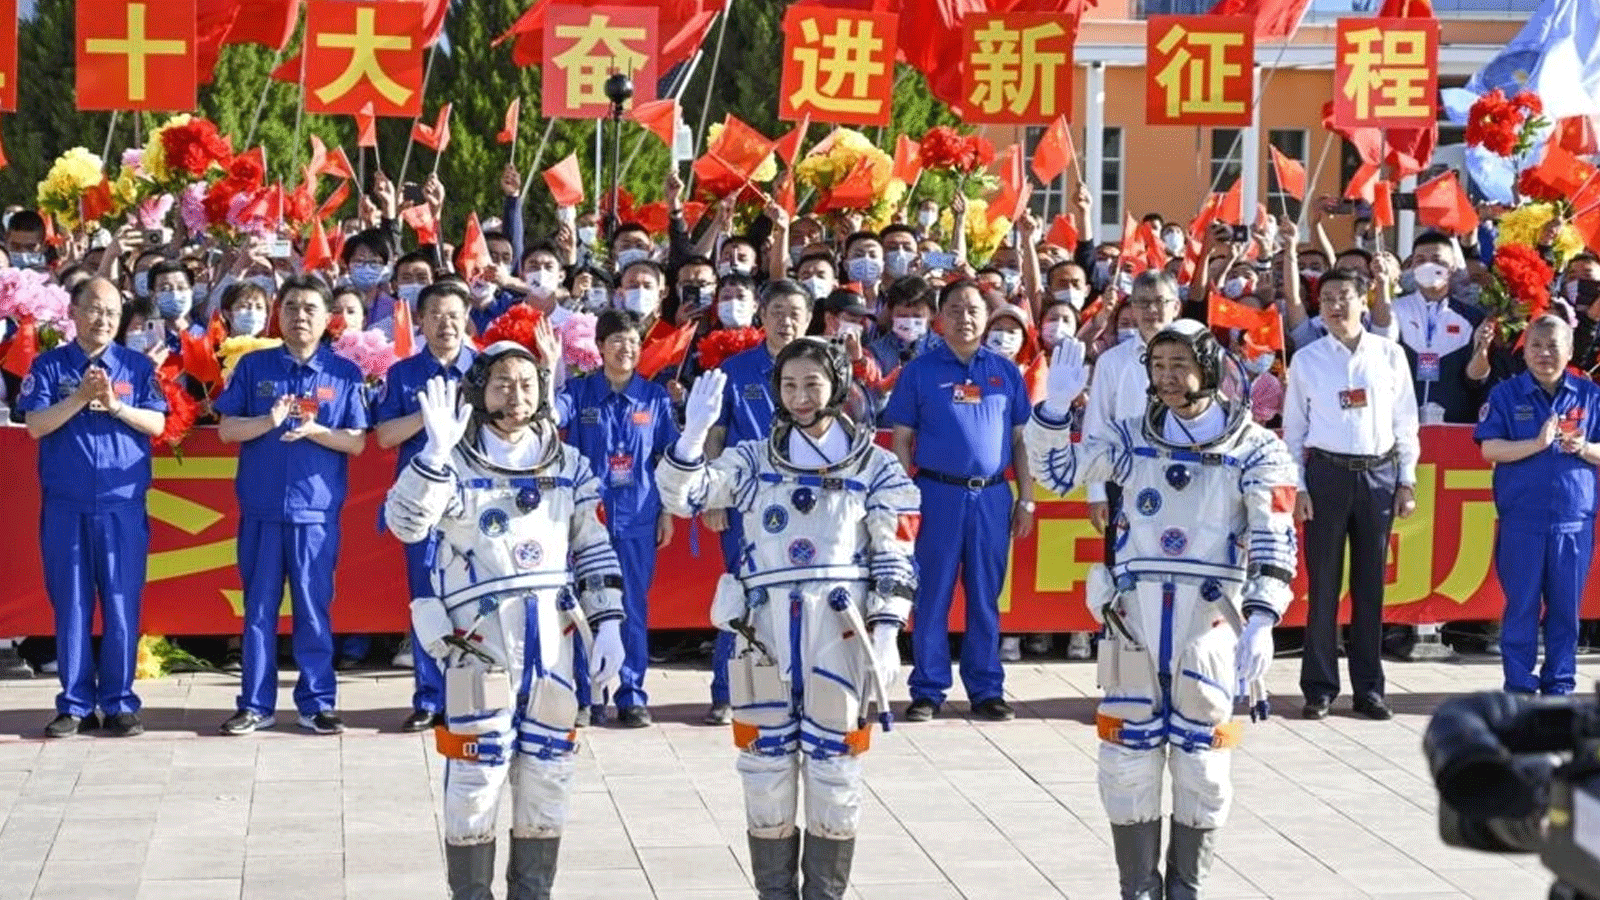  رواد الفضاء الصينيين كاي زوزهي (إلى اليسار) وتشين دونغ (في الوسط) وليو يانغ الذين شوهدوا بهذه اللقطة في يونيو\حزيران 2022 قبل بعثتهم إلى محطة تيانغونغ الفضائية، عادوا بأمان إلى الأرض.